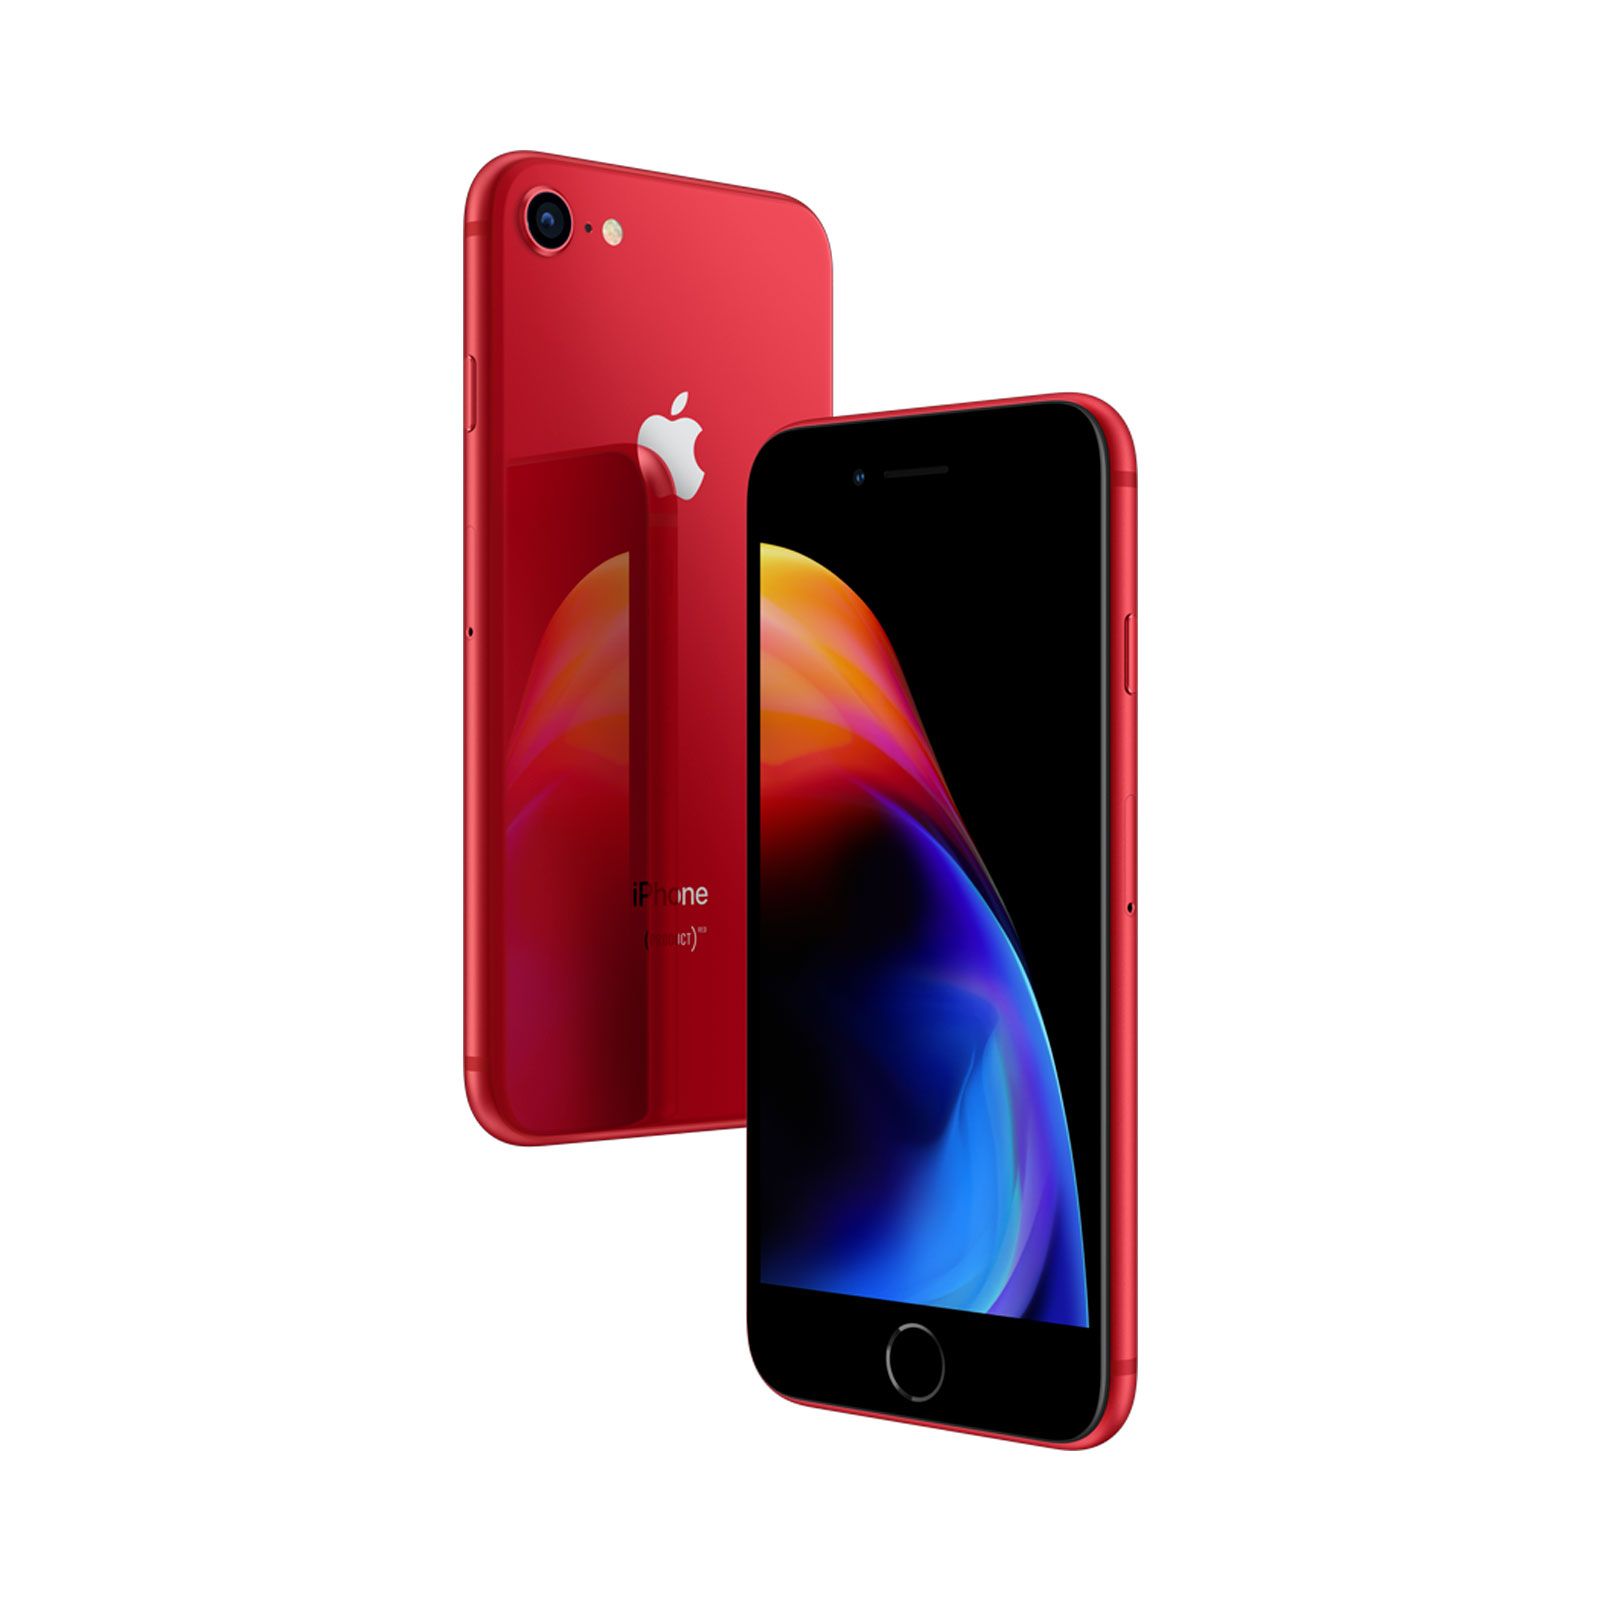 Apple iPhone 8, 64GB, (PRODUCT)RED, Trieda C - použité, záruka 12 mesiacov